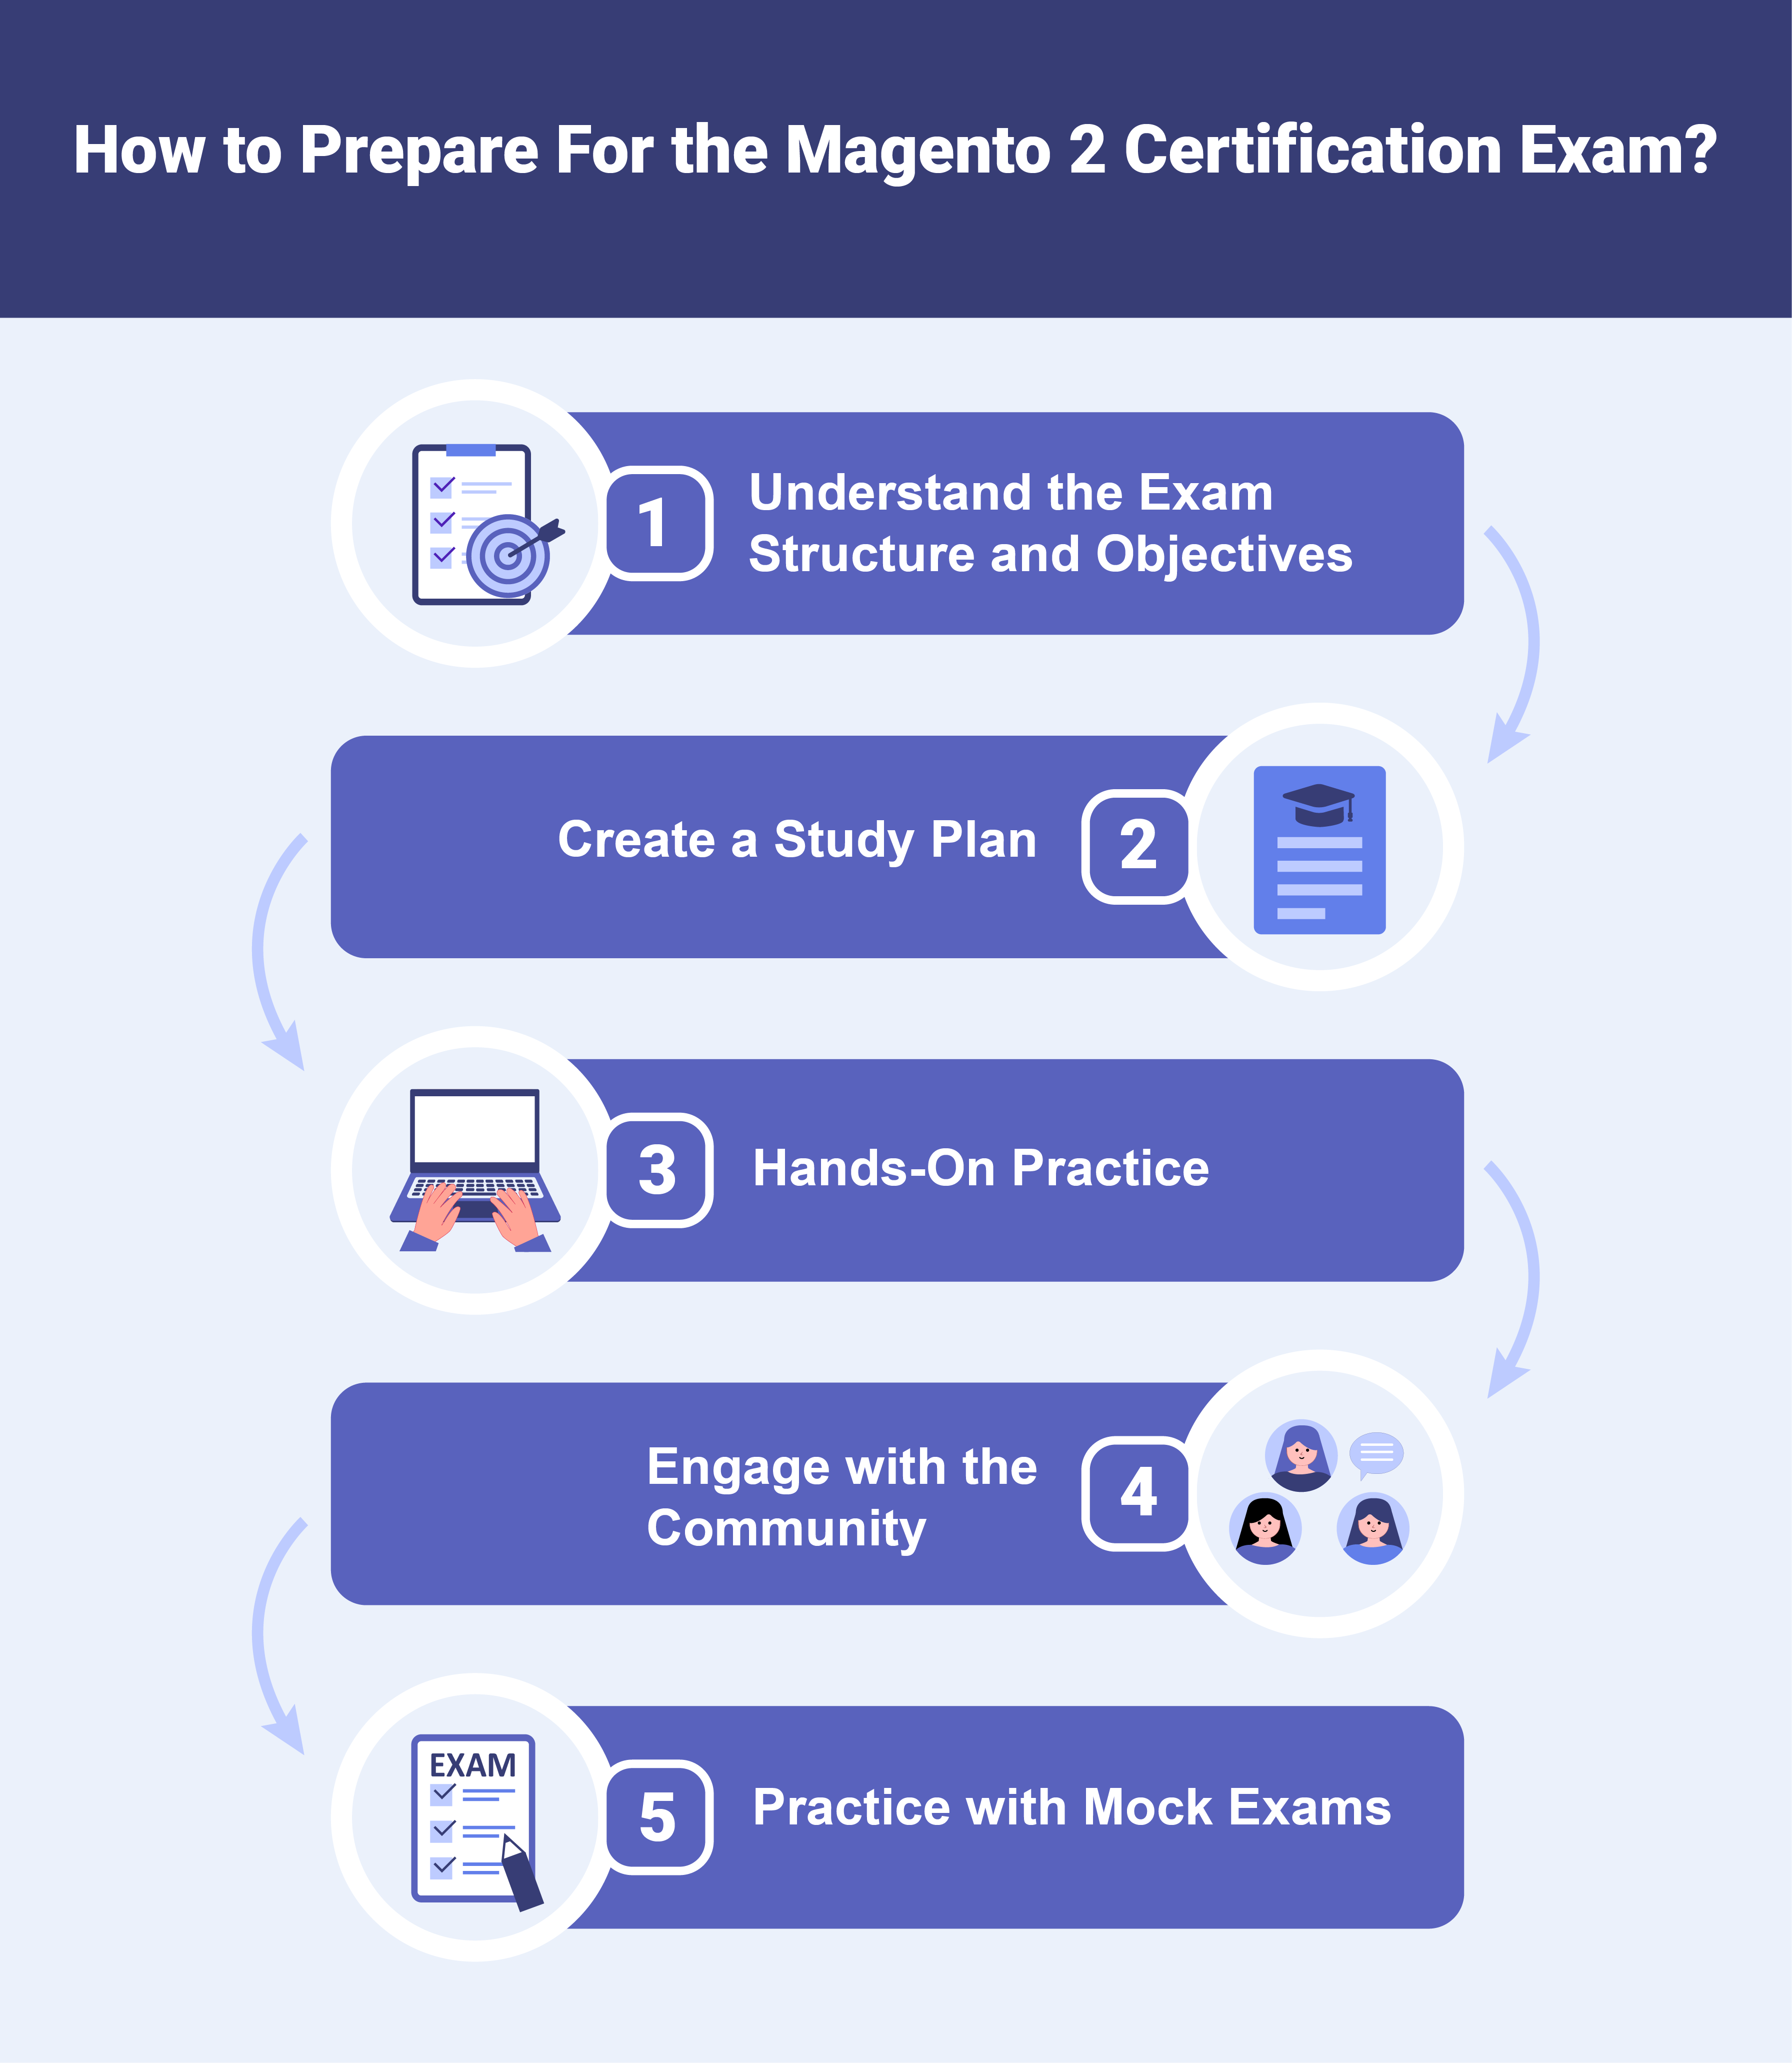 Prepare for the Magento 2 Certification Exam